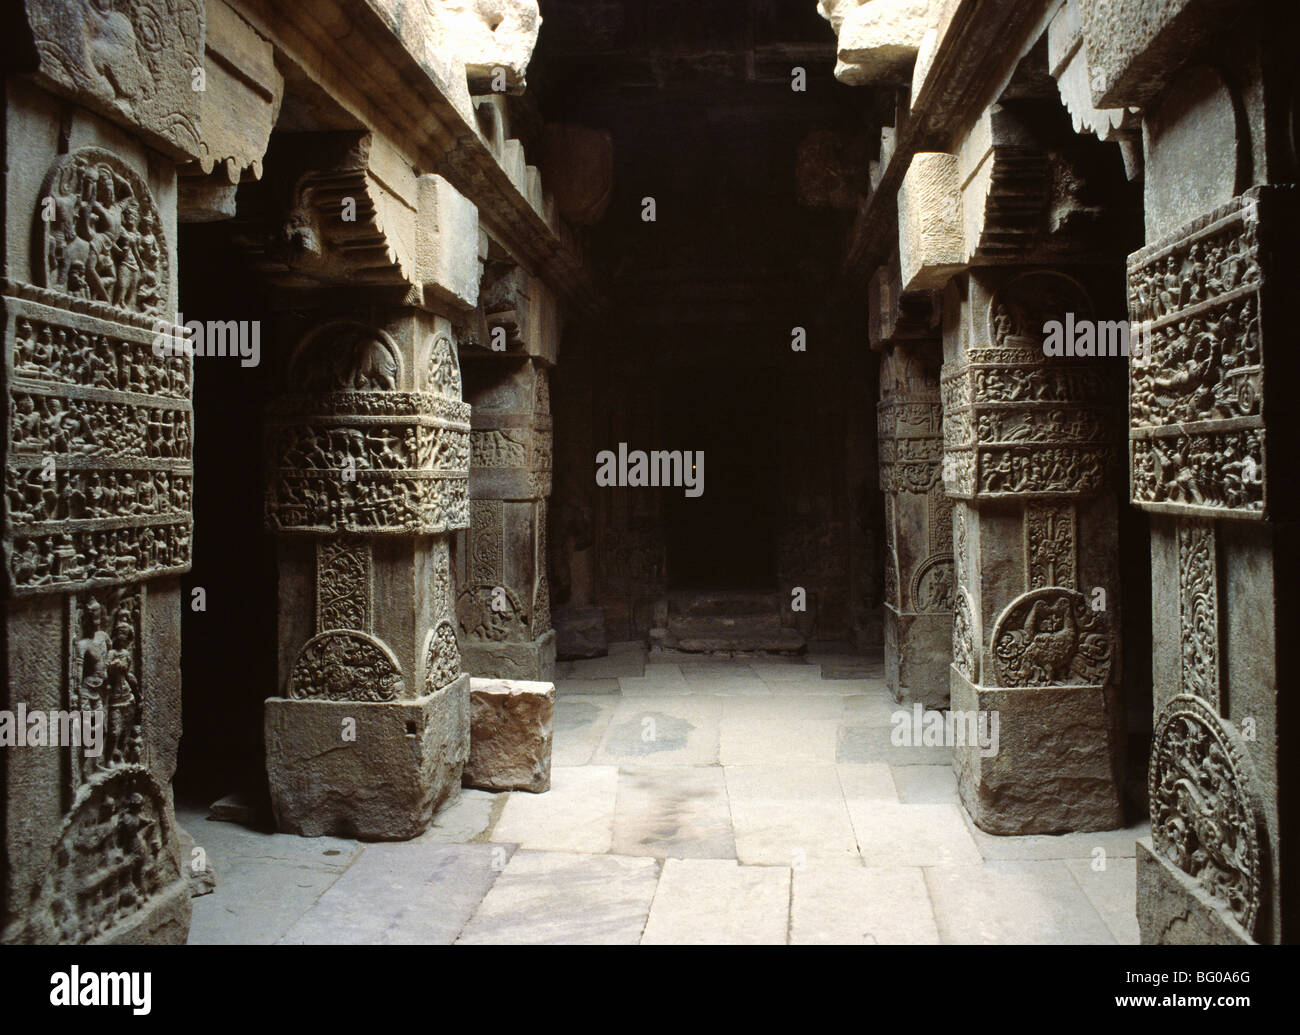 Wessuwan Tempel stammt aus dem 8. Jahrhundert n. Chr., eine imposante Tempel in der South Indian Art, Pattakadal, Karnataka, Indien Stockfoto